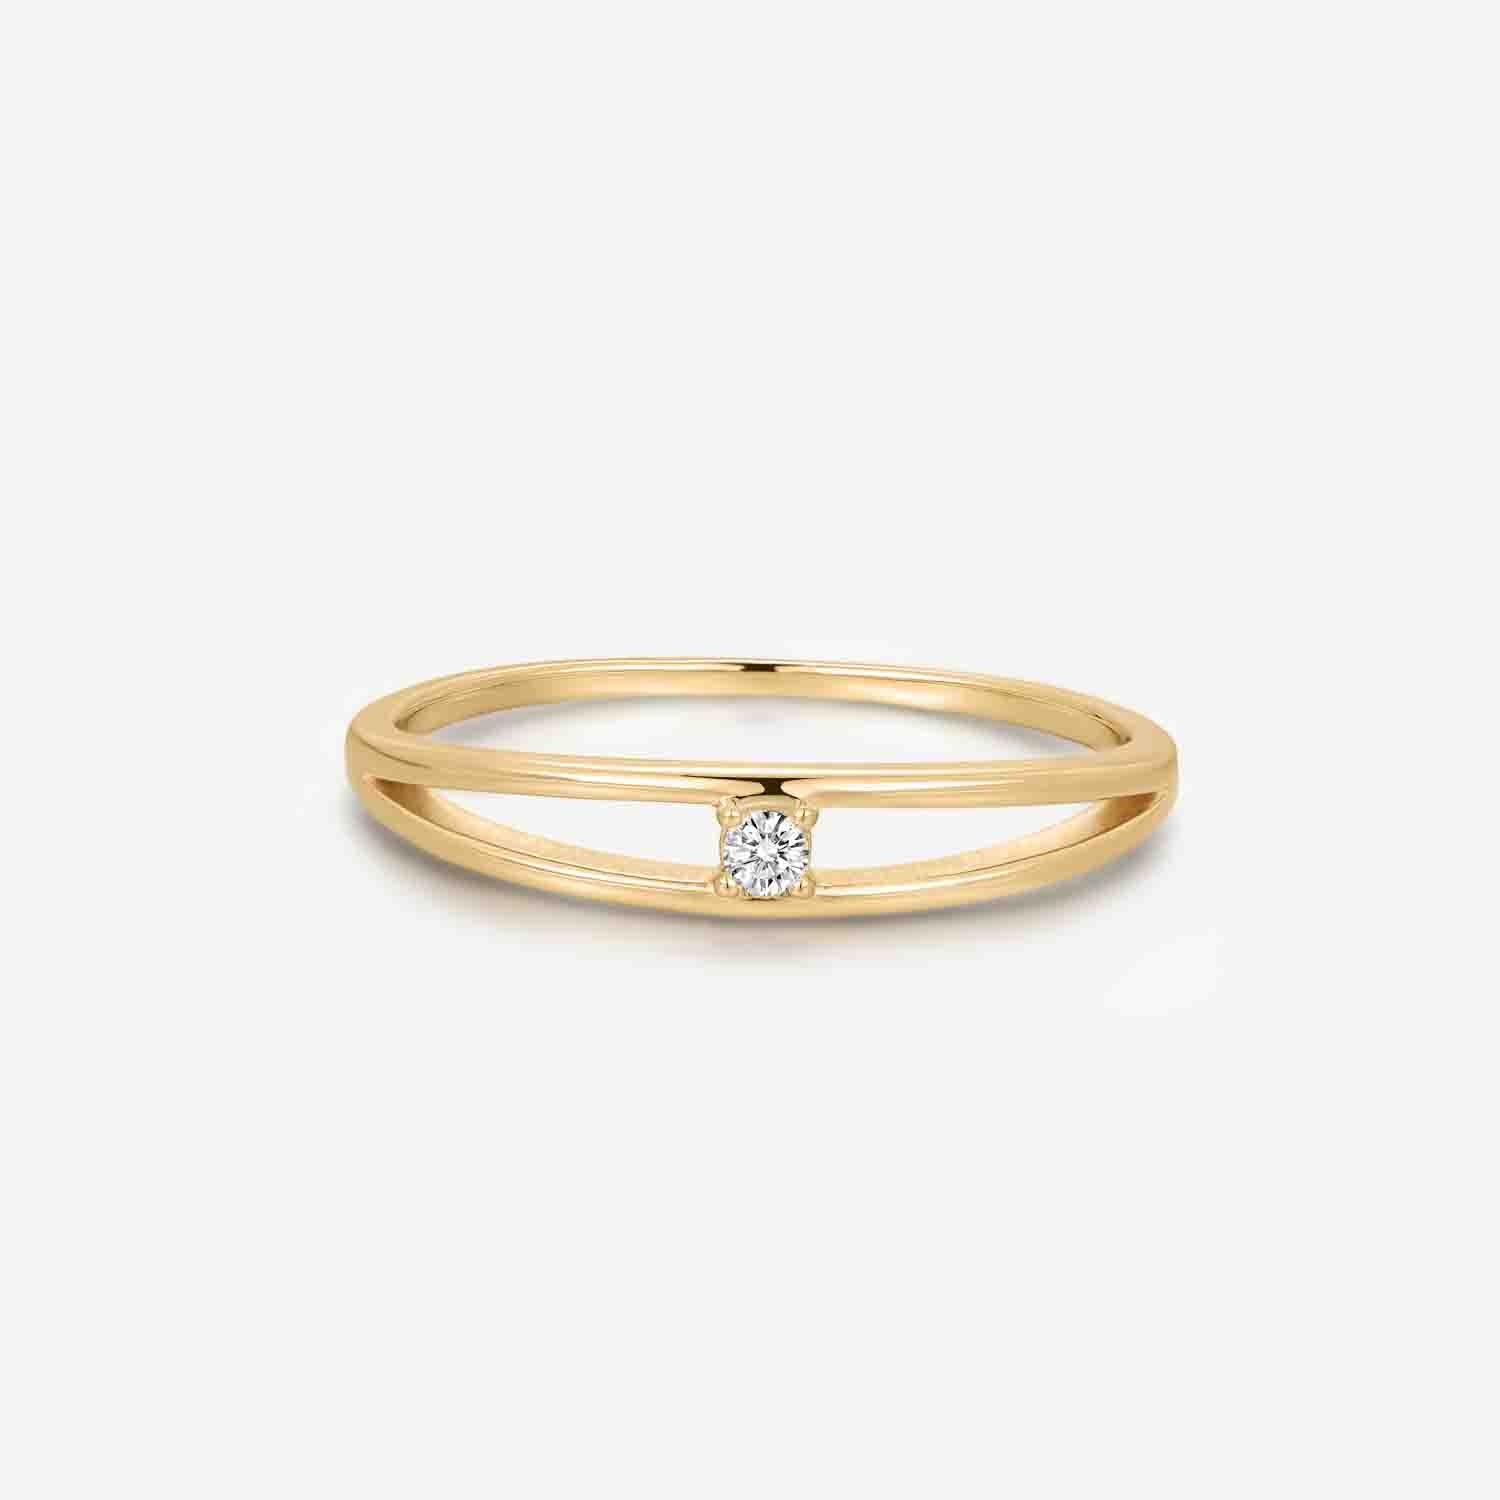 Enchanted Circlet Gold Ring